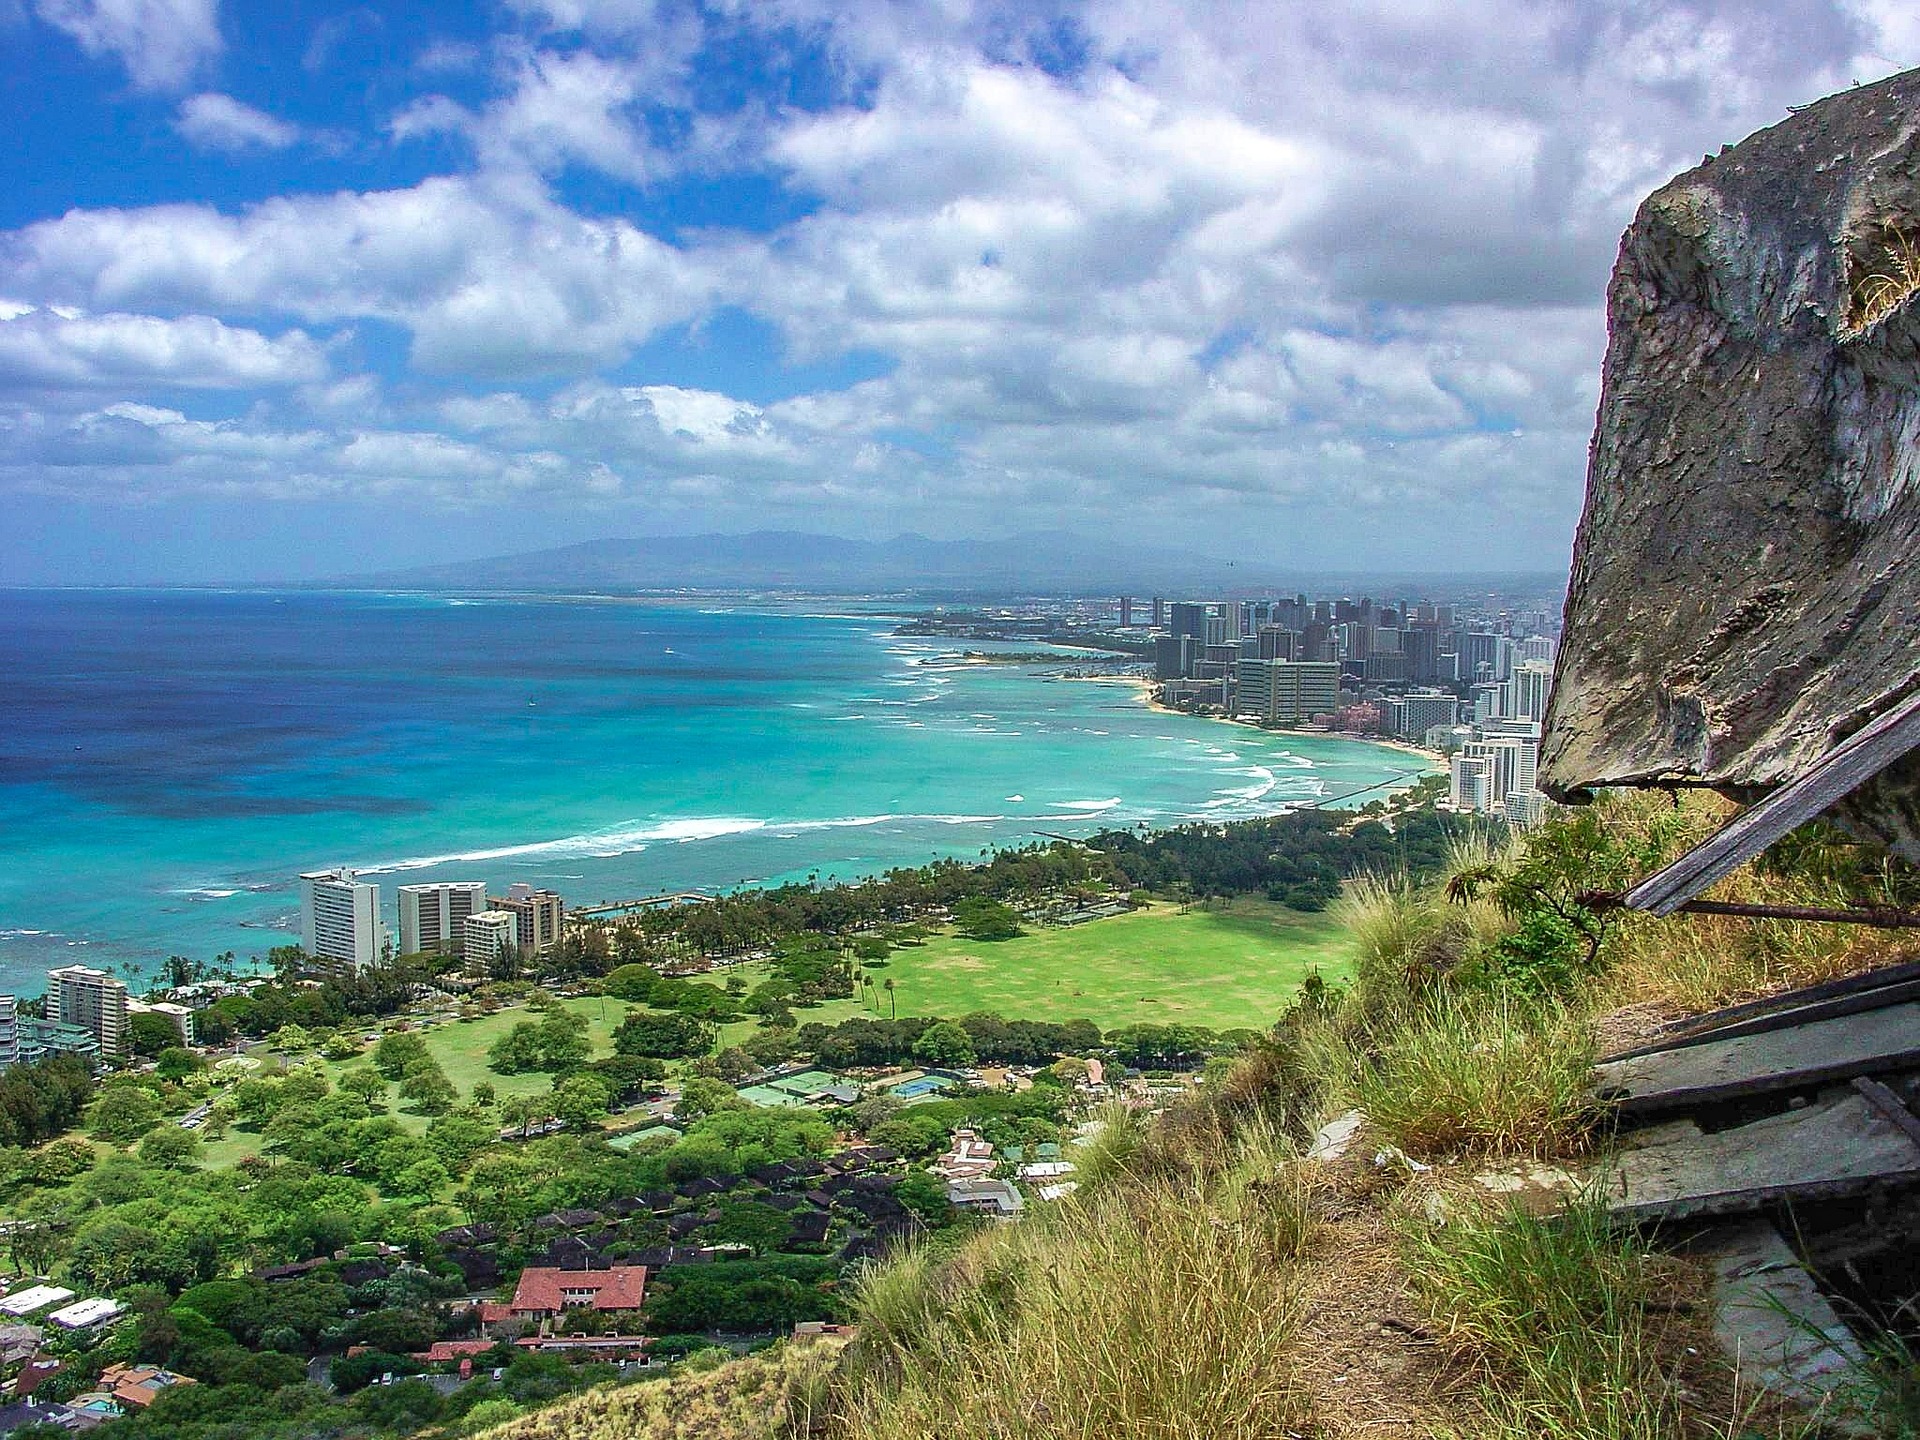 Perles du Pacifique en croisière - D'Hawaï à l'Australie & séjour de 4 nuits à Honolulu sur l'Île d'Oahu (Hawaï, Polynésie Française, Nouvelle-Zélande et Australie)